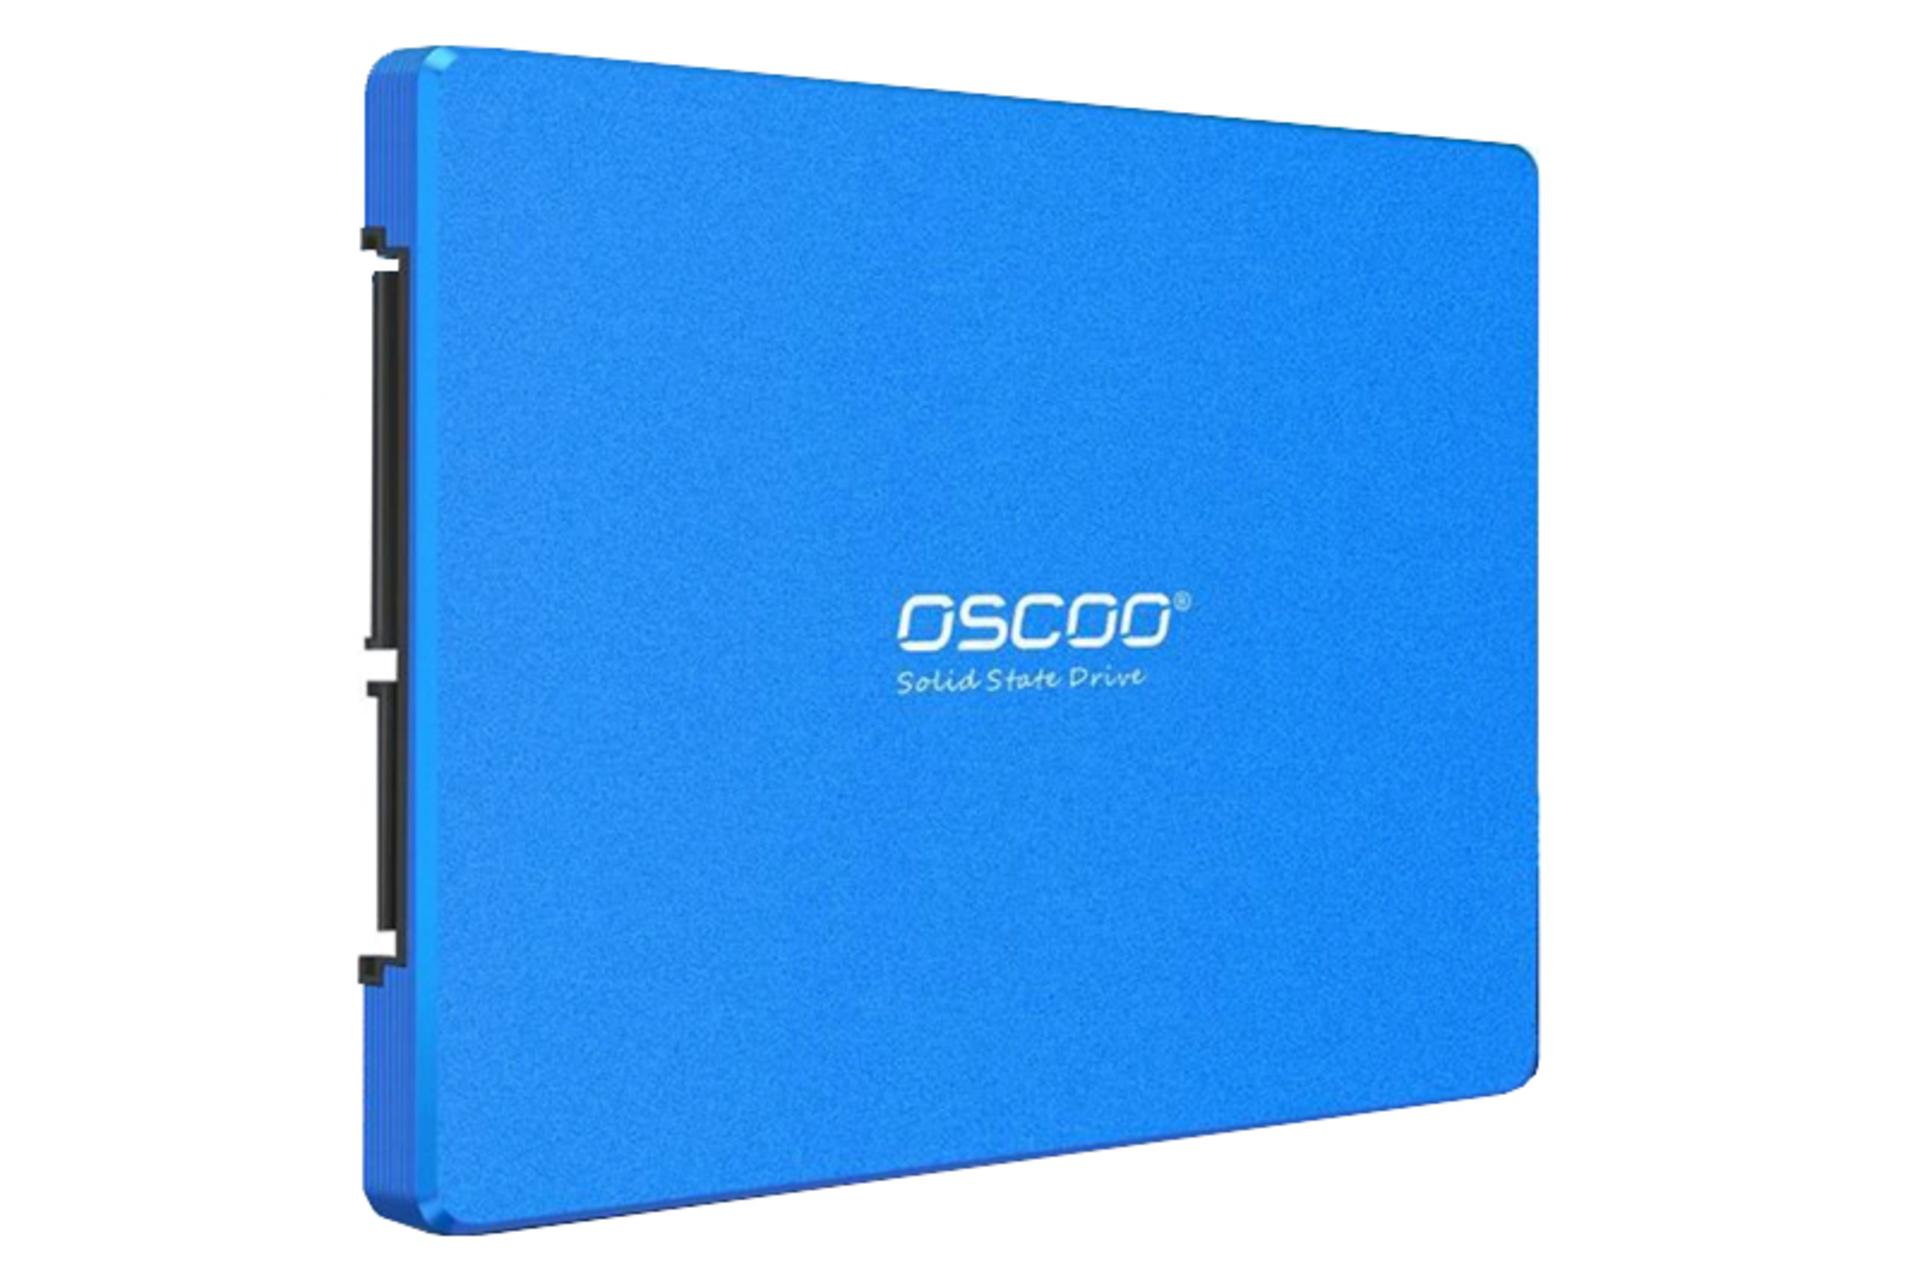 نمای کناری و اینترفیس اس اس دی اسکو BLUE OSC-SSD-001 SATA 2.5 Inch ظرفیت 1 ترابایت